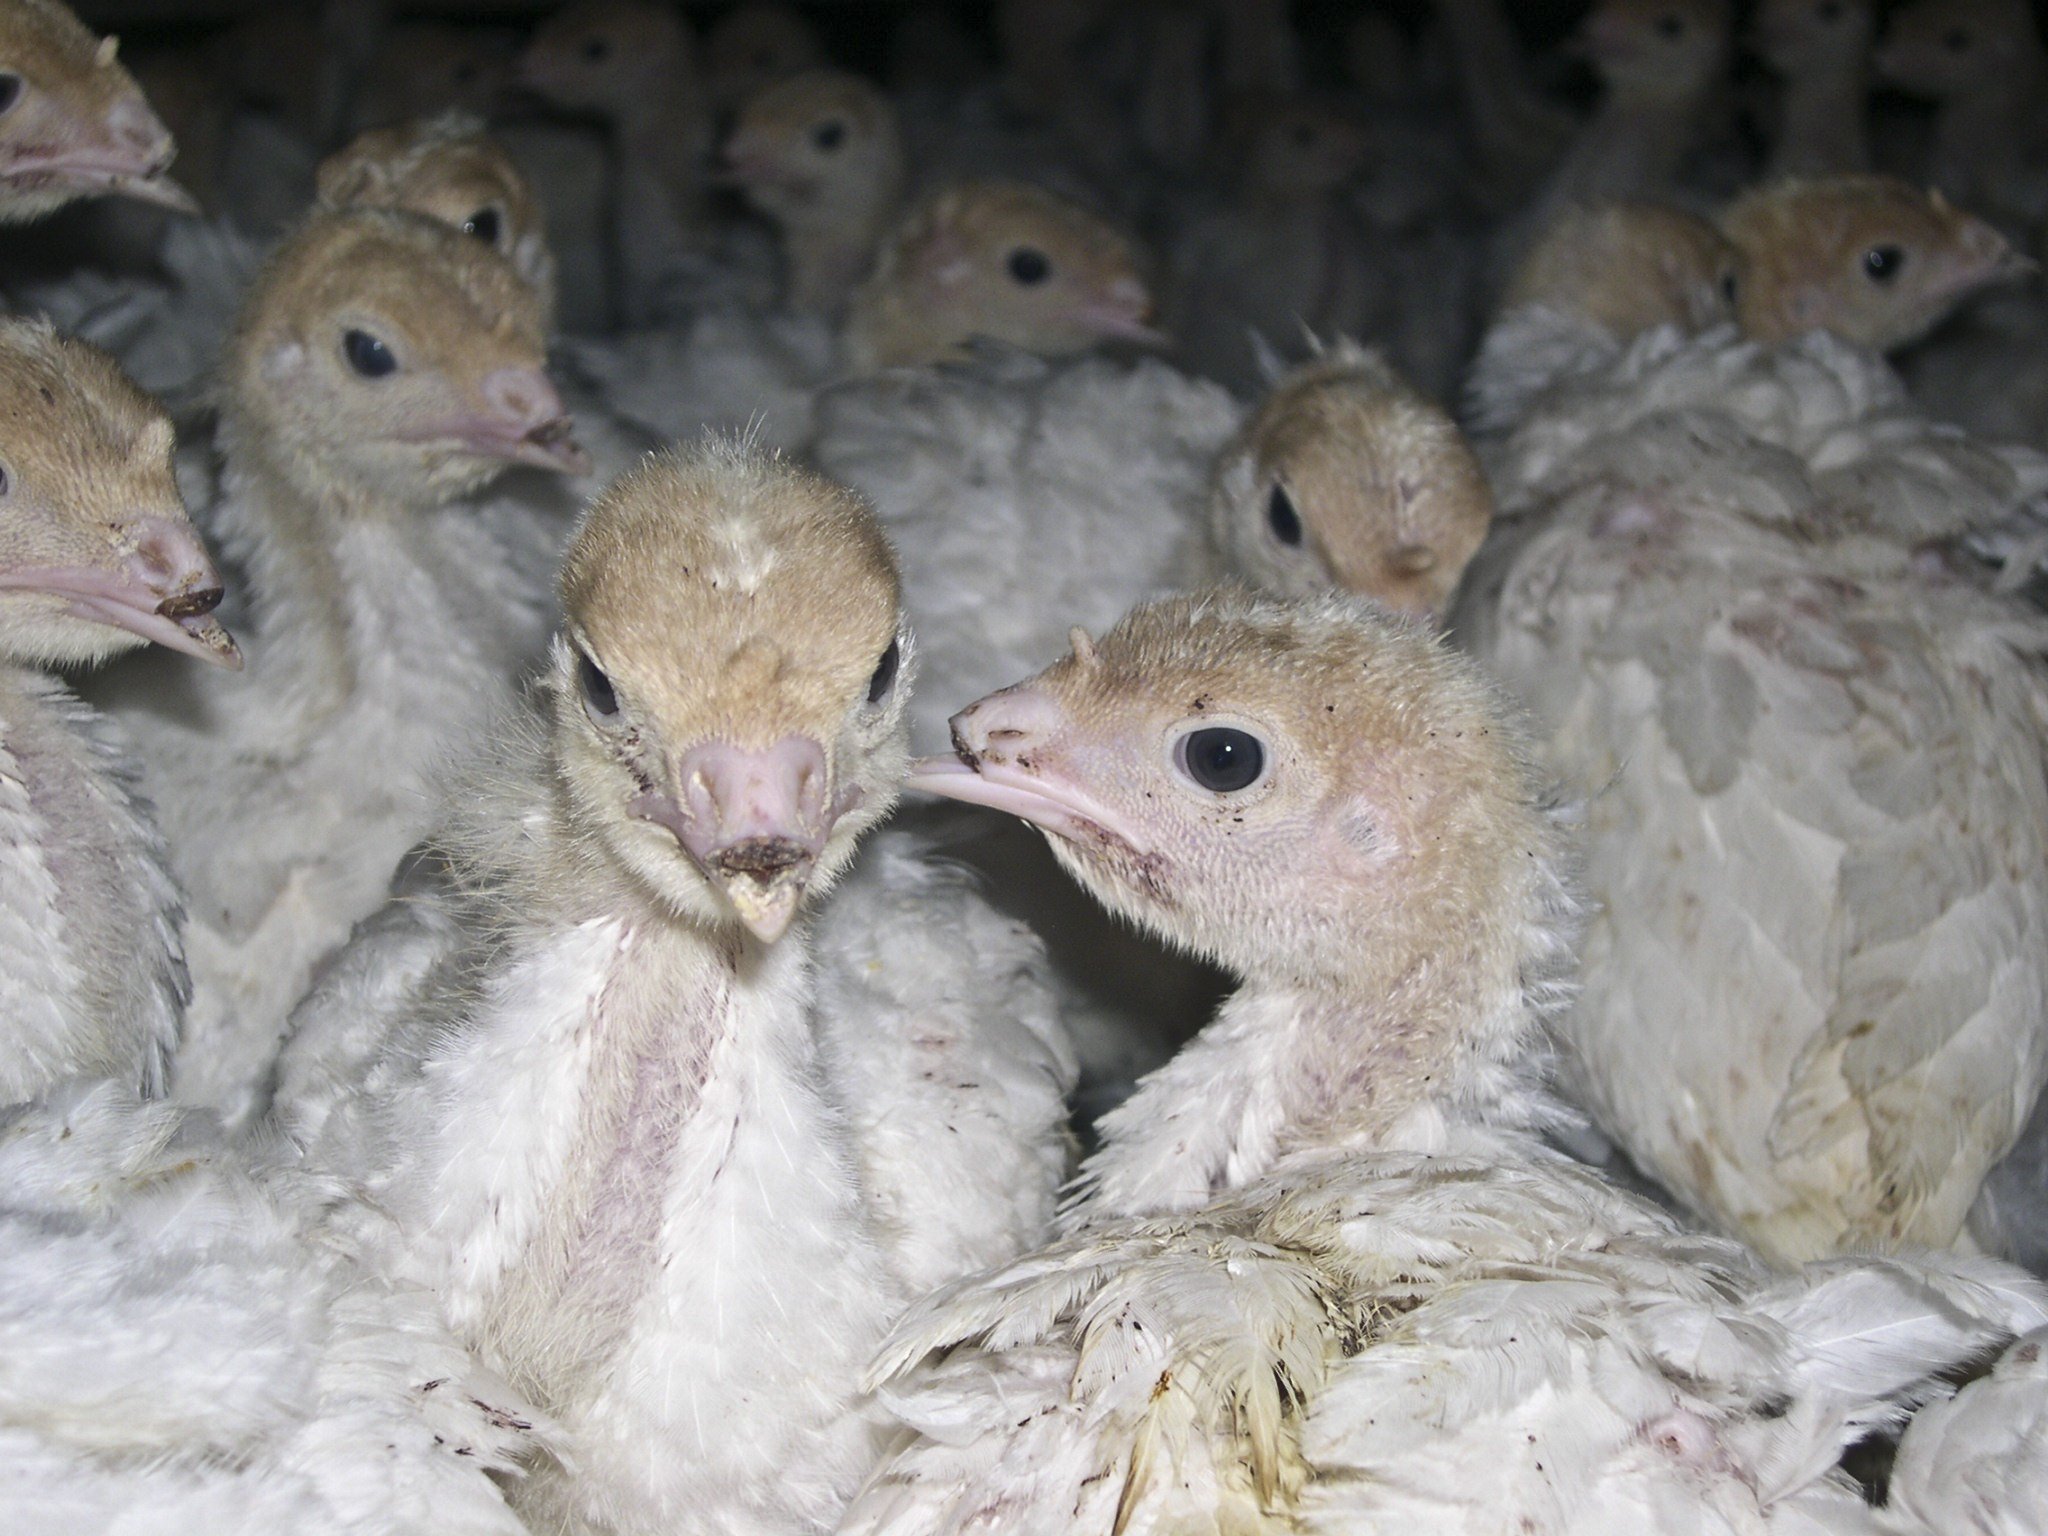 De-beaked turkeys on factory farms